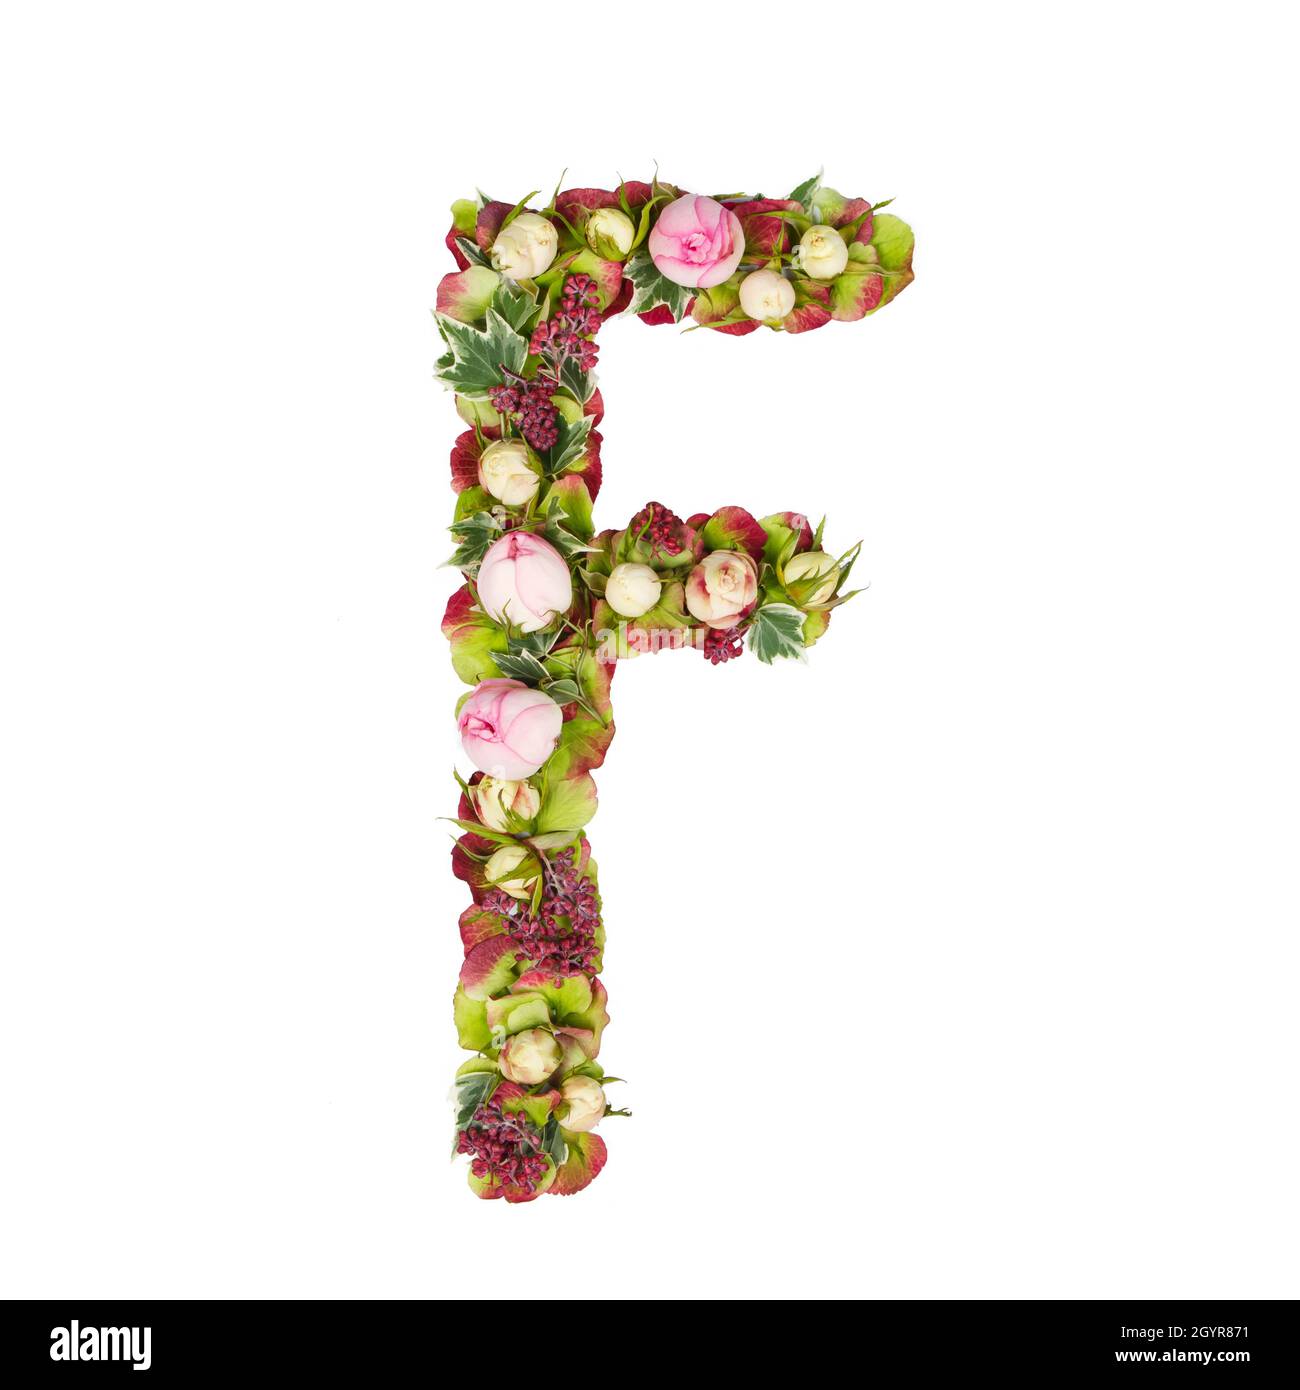 Lettera maiuscola F parte di un insieme di lettere, numeri e simboli dell'alfabeto realizzato con fiori, rami e foglie su sfondo bianco Foto Stock